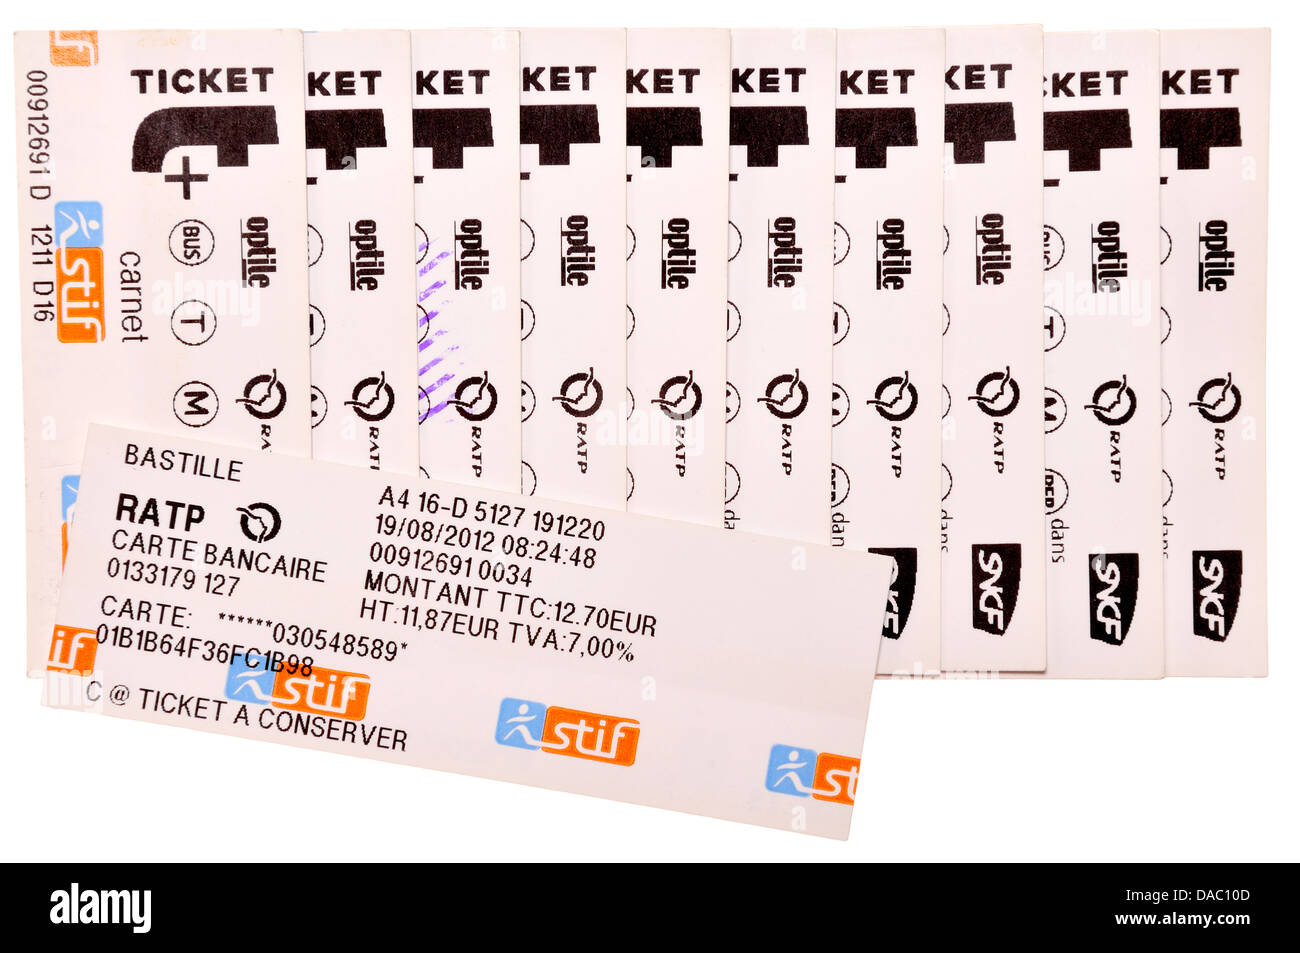 Les tickets de métro de Paris. 'Un' - carnet de 10 billets achetés ensemble au rabais, avec réception Banque D'Images